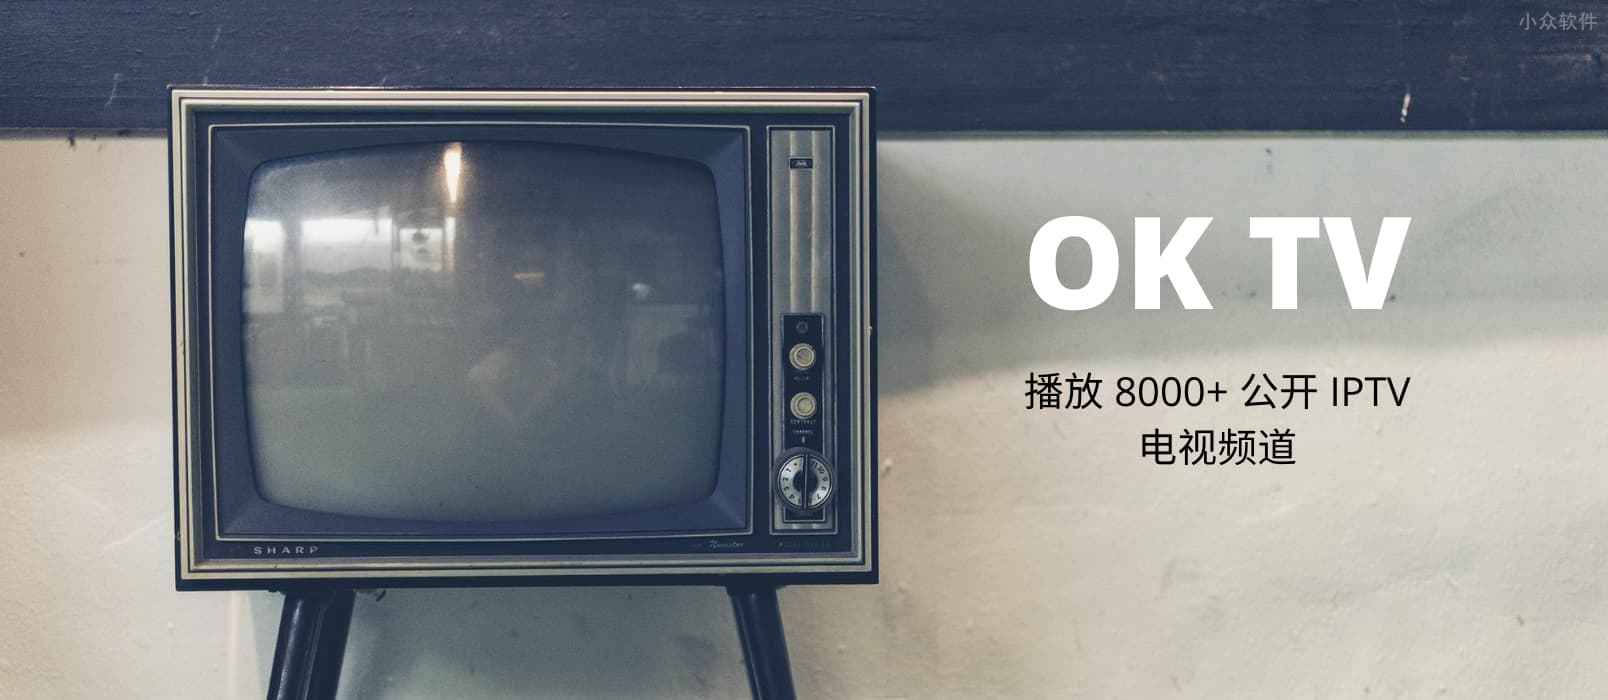 OK TV - 用安卓盒子播放全球 8000+ 公开 IPTV 电视频道 1